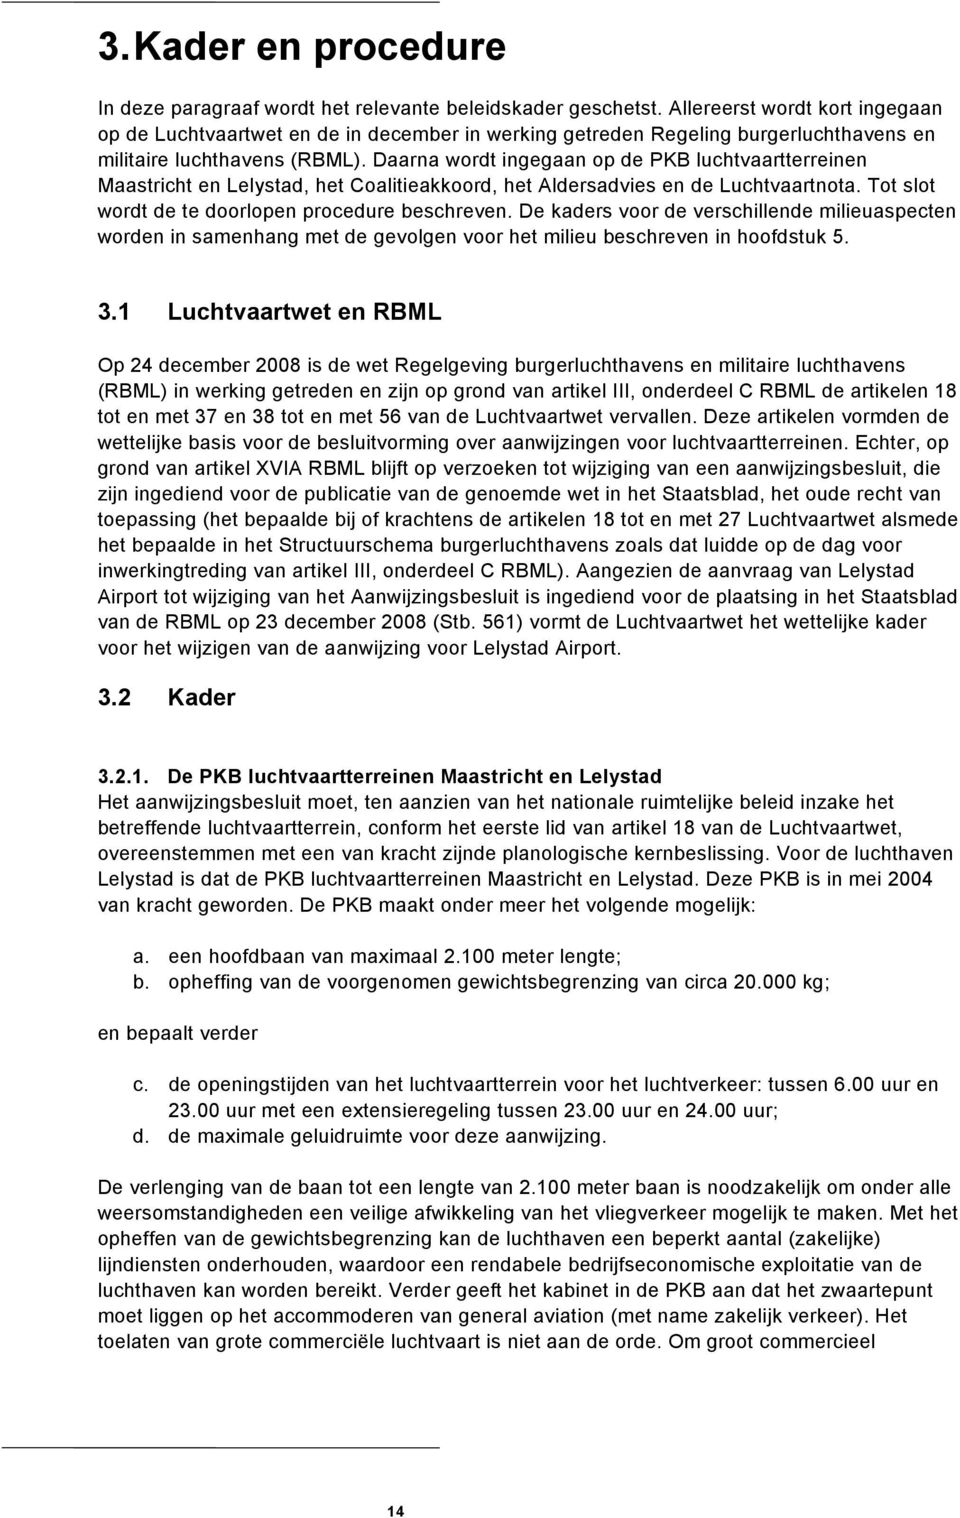 Daarna wordt ingegaan op de PKB luchtvaartterreinen Maastricht en, het Coalitieakkoord, het Aldersadvies en de Luchtvaartnota. Tot slot wordt de te doorlopen procedure beschreven.